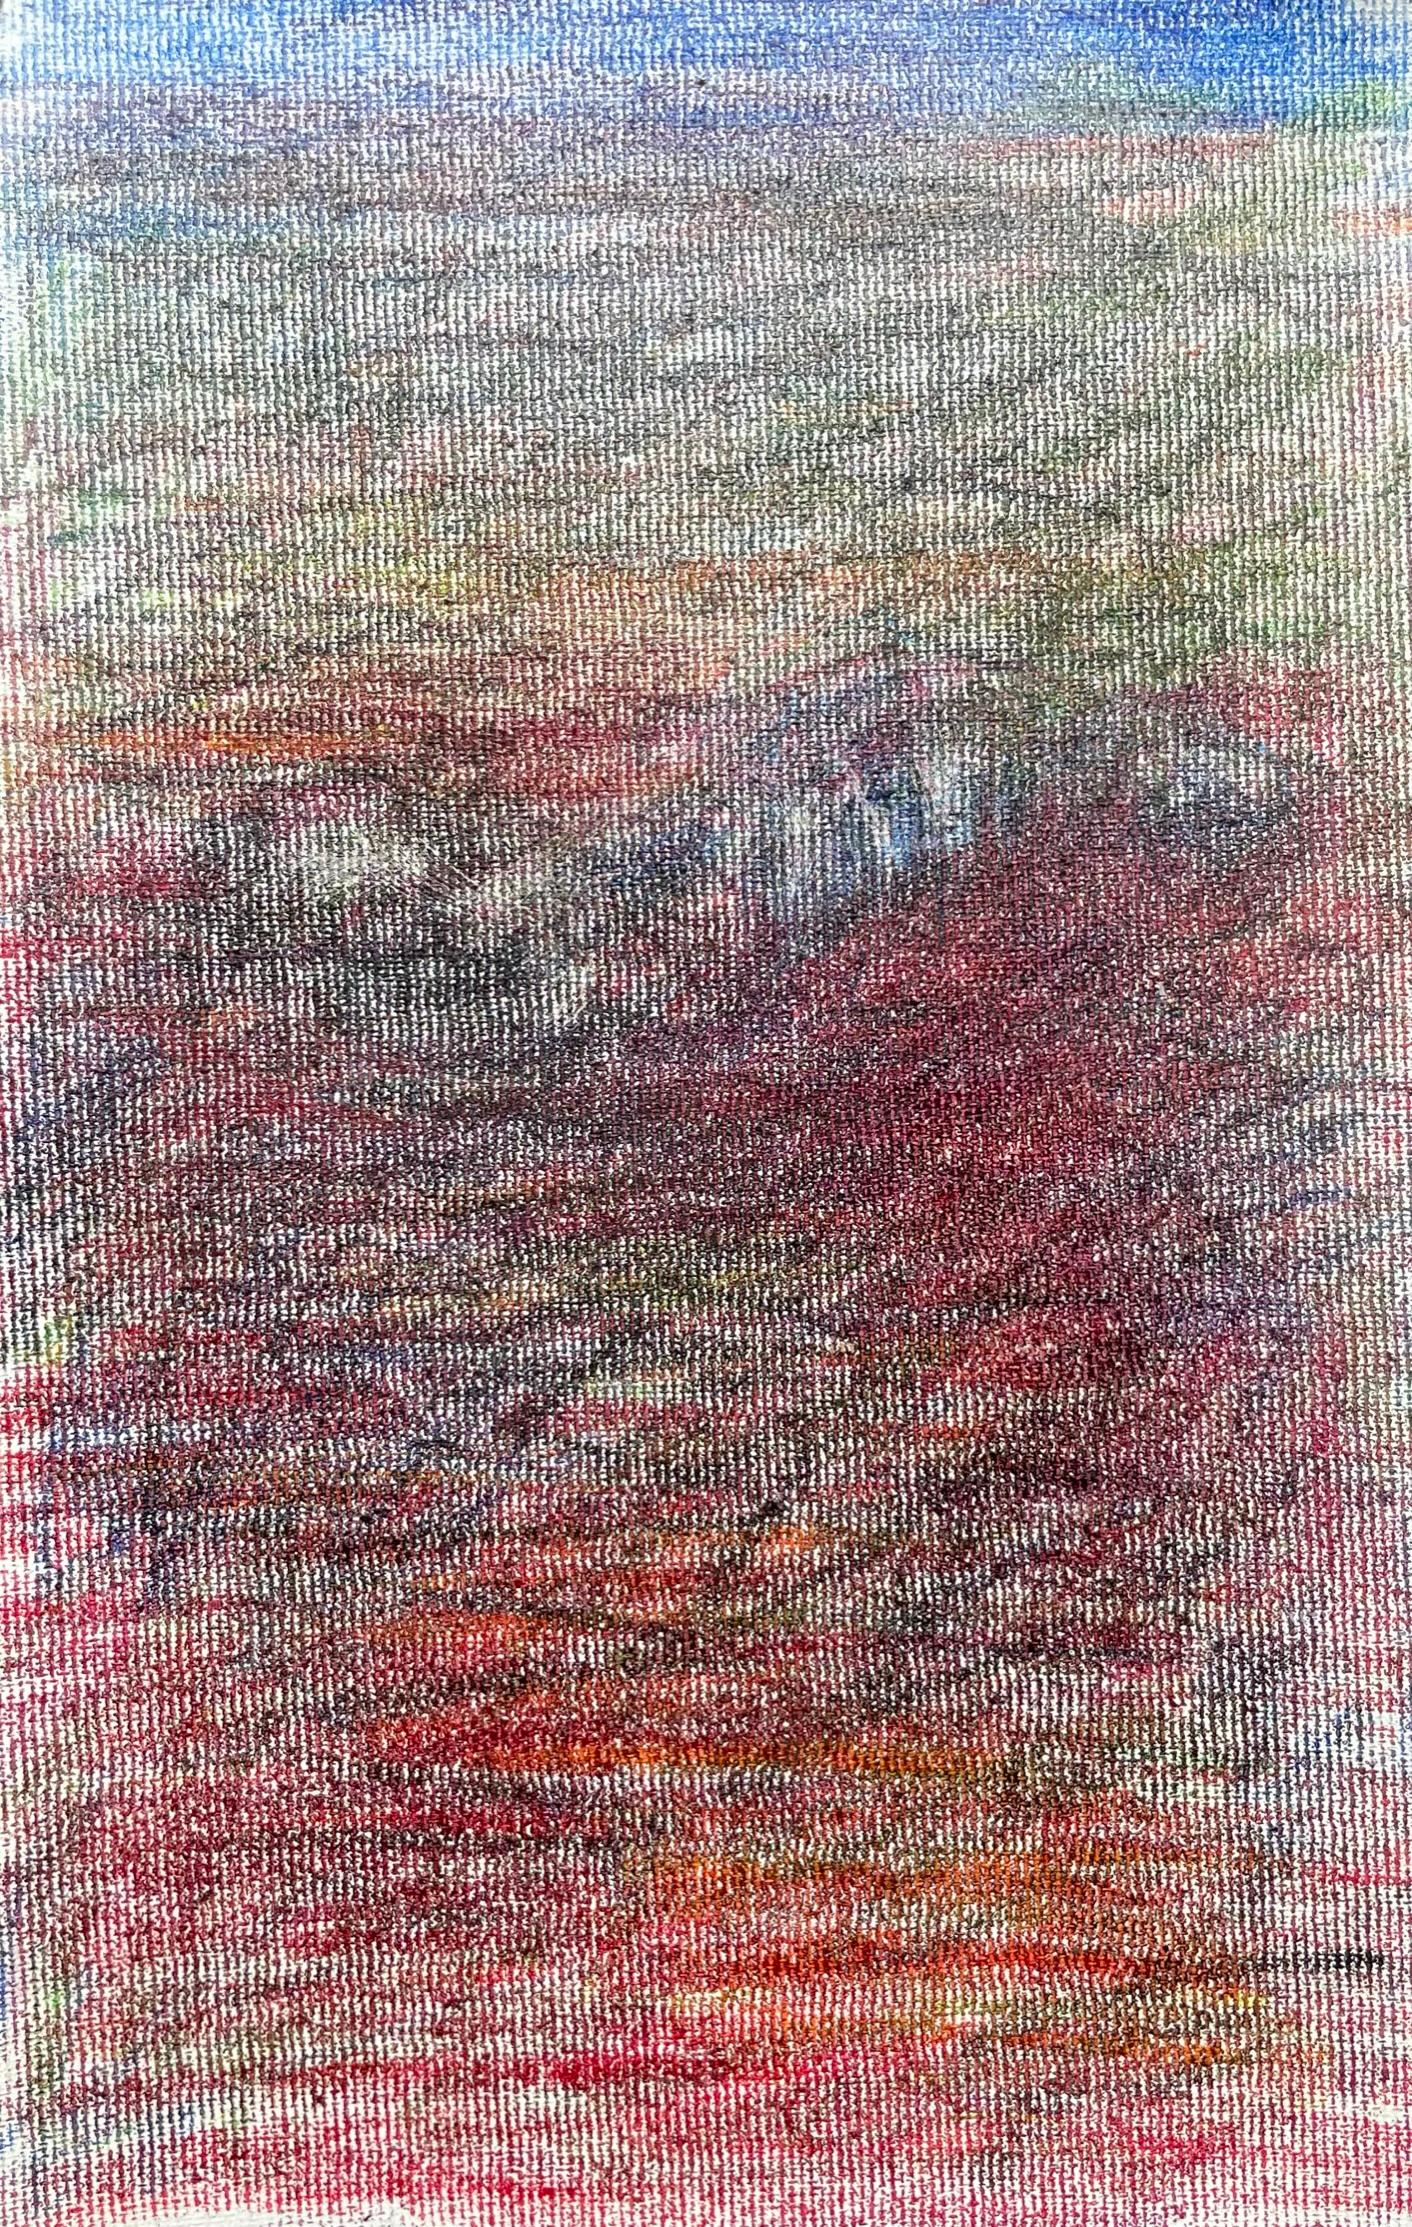 Body in the Field #2 - Rot, Blau, Zeichnung, Buntstifte, Landschaft